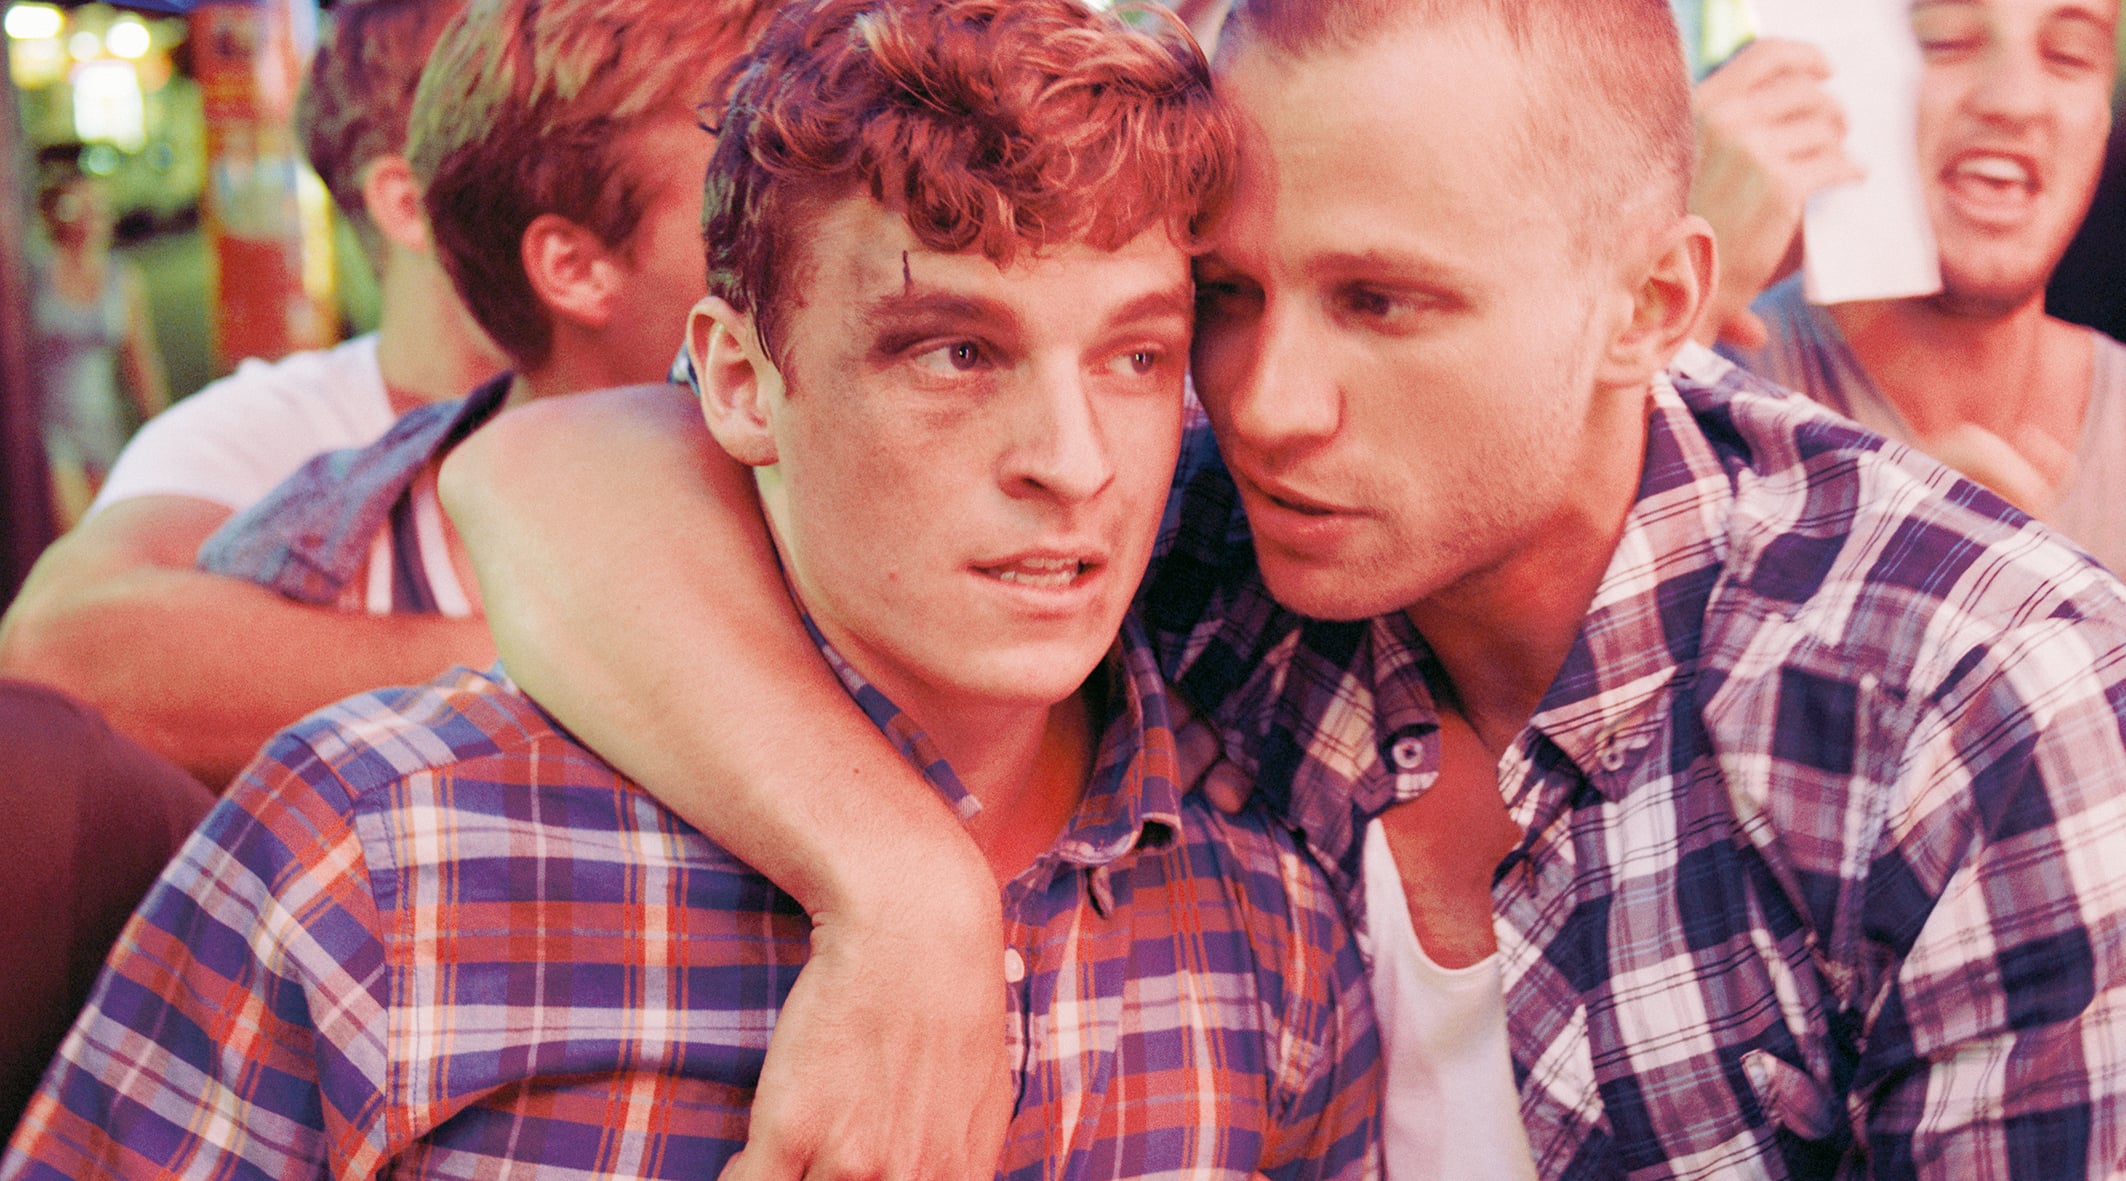 Drown Trailer Germandeutsch Hd By Queer Starsde We Love Queer Cinema On Vimeo 